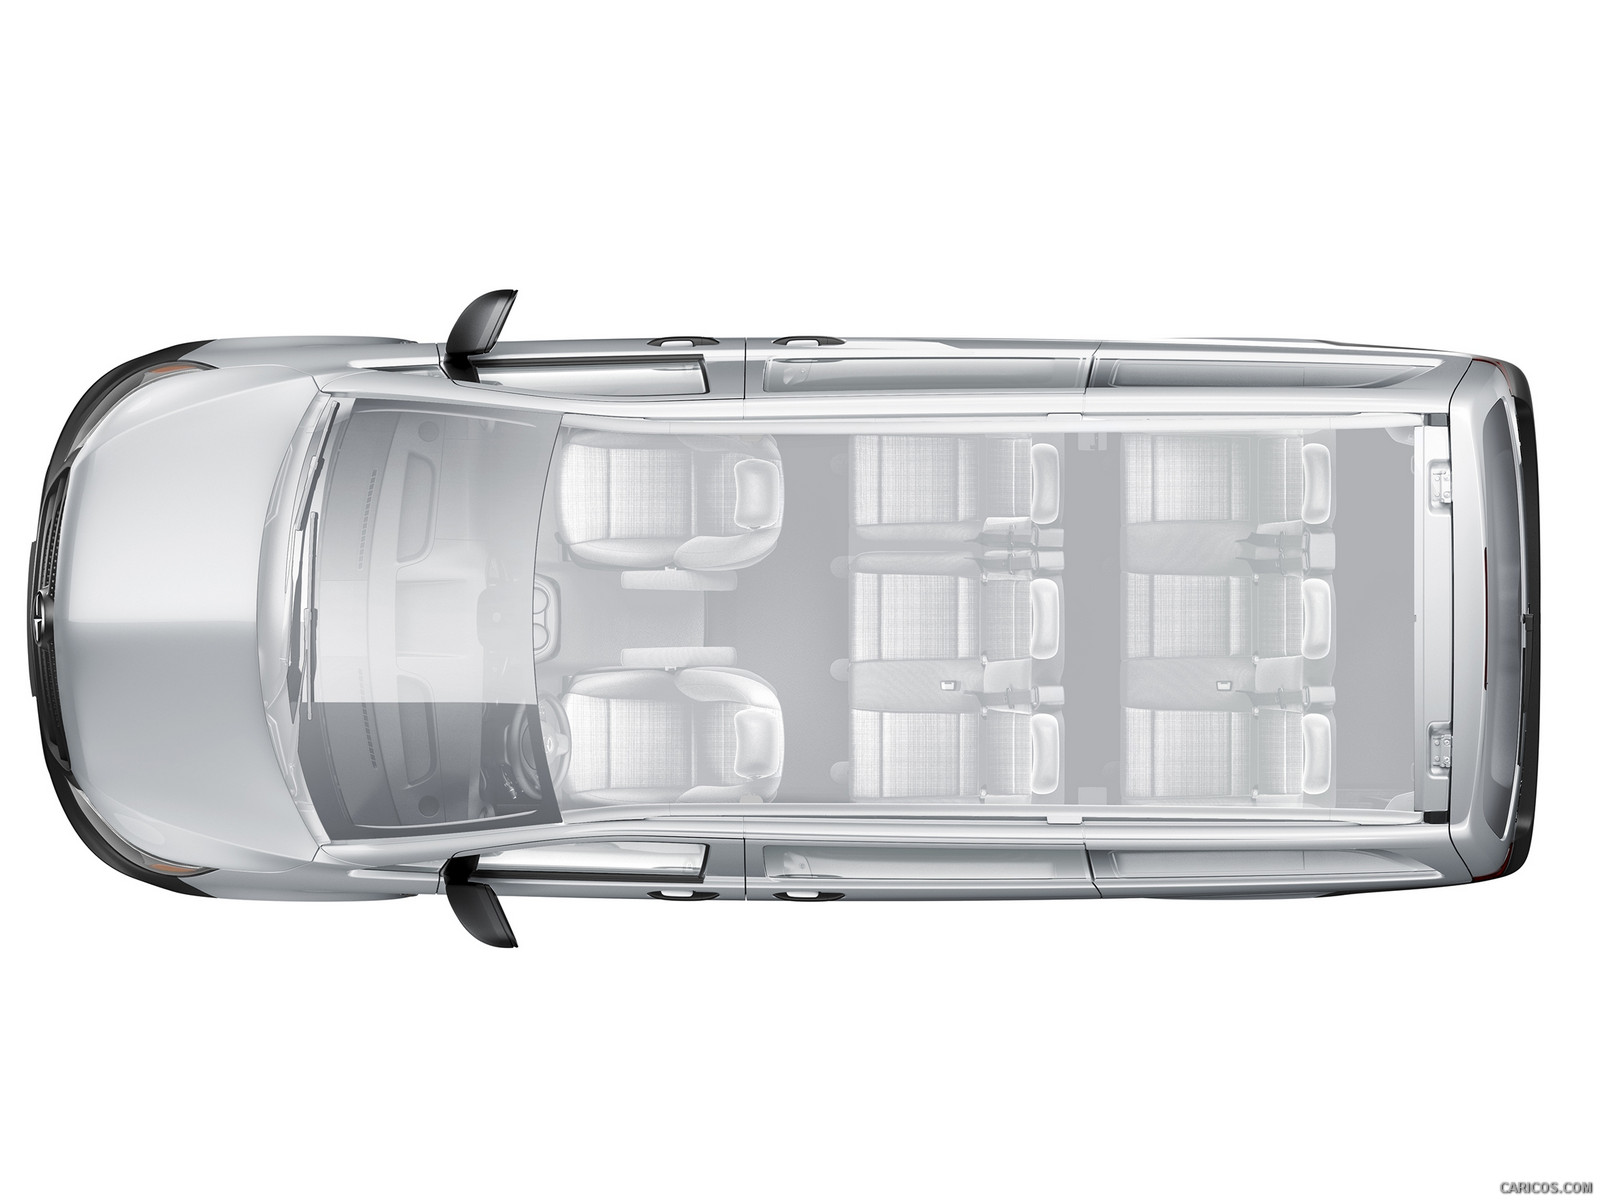 2016 Mercedes Benz Metris Passenger Van Interior Hd